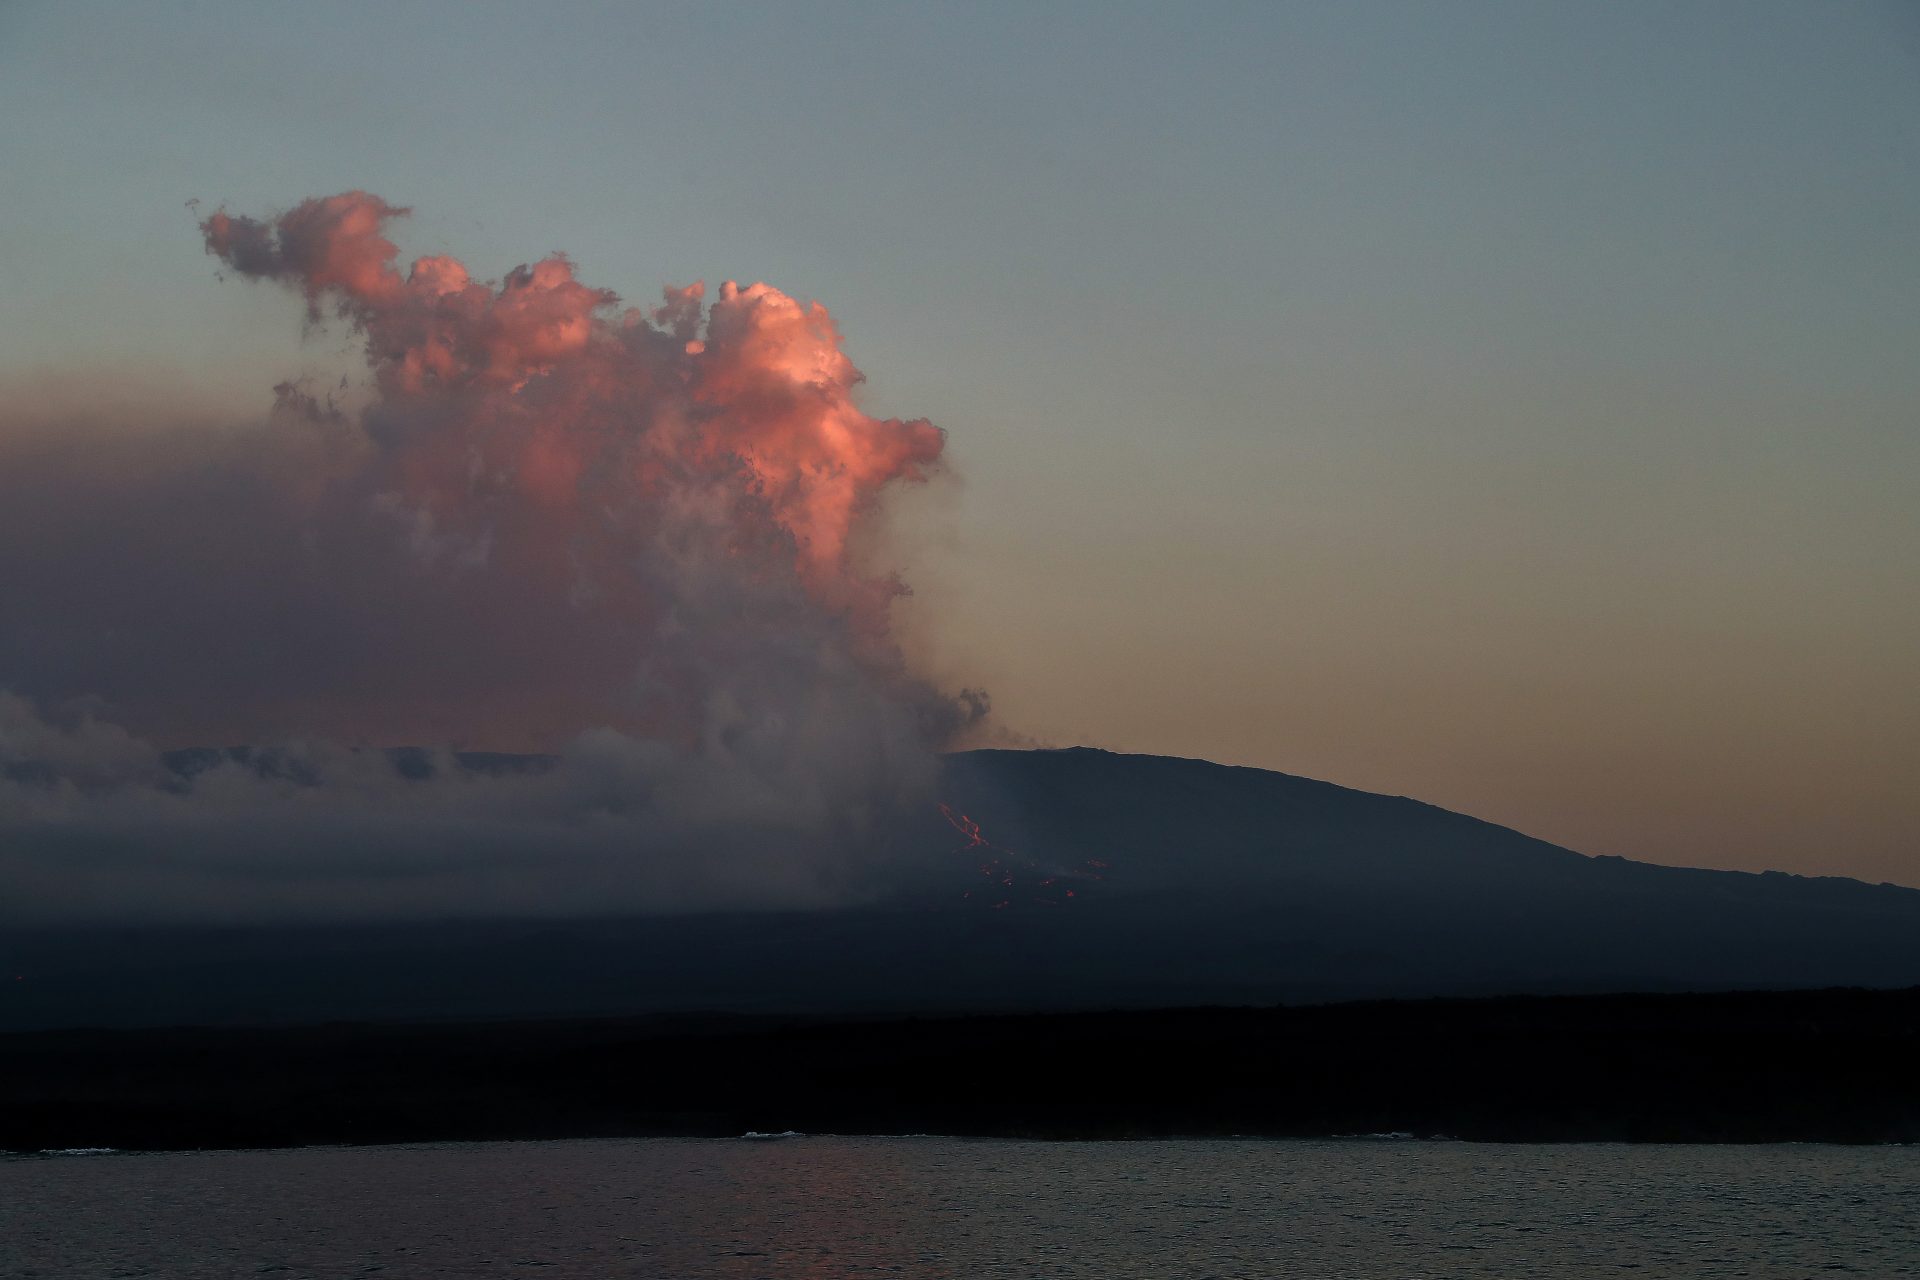 AME5204. ISLAS GALÁPAGOS (ECUADOR), 04/03/2024.- Fotografía de la erupción del volcán La Cumbre este lunes, en la isla Fernandina, en las Islas Galápagos (Ecuador). El volcán Fernandina, situado en las Islas Galápagos (Ecuador), inició un nuevo proceso eruptivo, cuatro años después del último en enero de 2020, según anunció este domingo el Instituto Geofísico de la Escuela Politécnica Nacional de Ecuador en un reporte especial. La erupción de La Cumbre, como también se conoce a este volcán, comenzó el sábado 2 de marzo a las 23:50 hora local (5:50 GMT del domingo 3 de marzo) con la emisión de gas procedente de una fisura circunferencial en la parte alta del flanco suroriental de la isla Fernandina, la más occidental del archipiélago. EFE/José Jácome